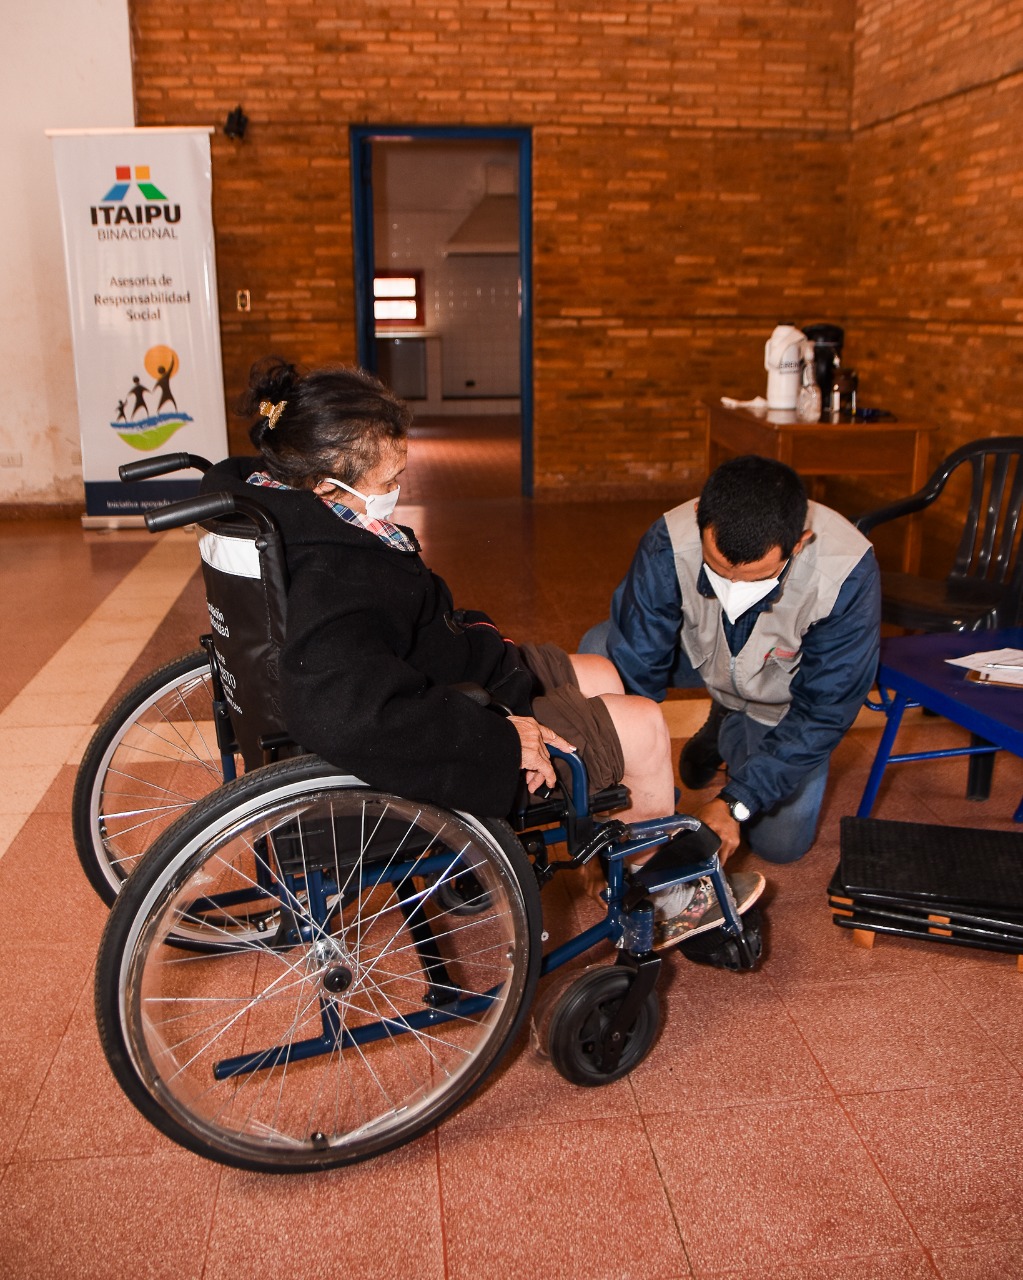 Entrega De Sillas De Ruedas Y Ayudas Técnicas A Personas Con Discapacidad Itaipu Binacional 